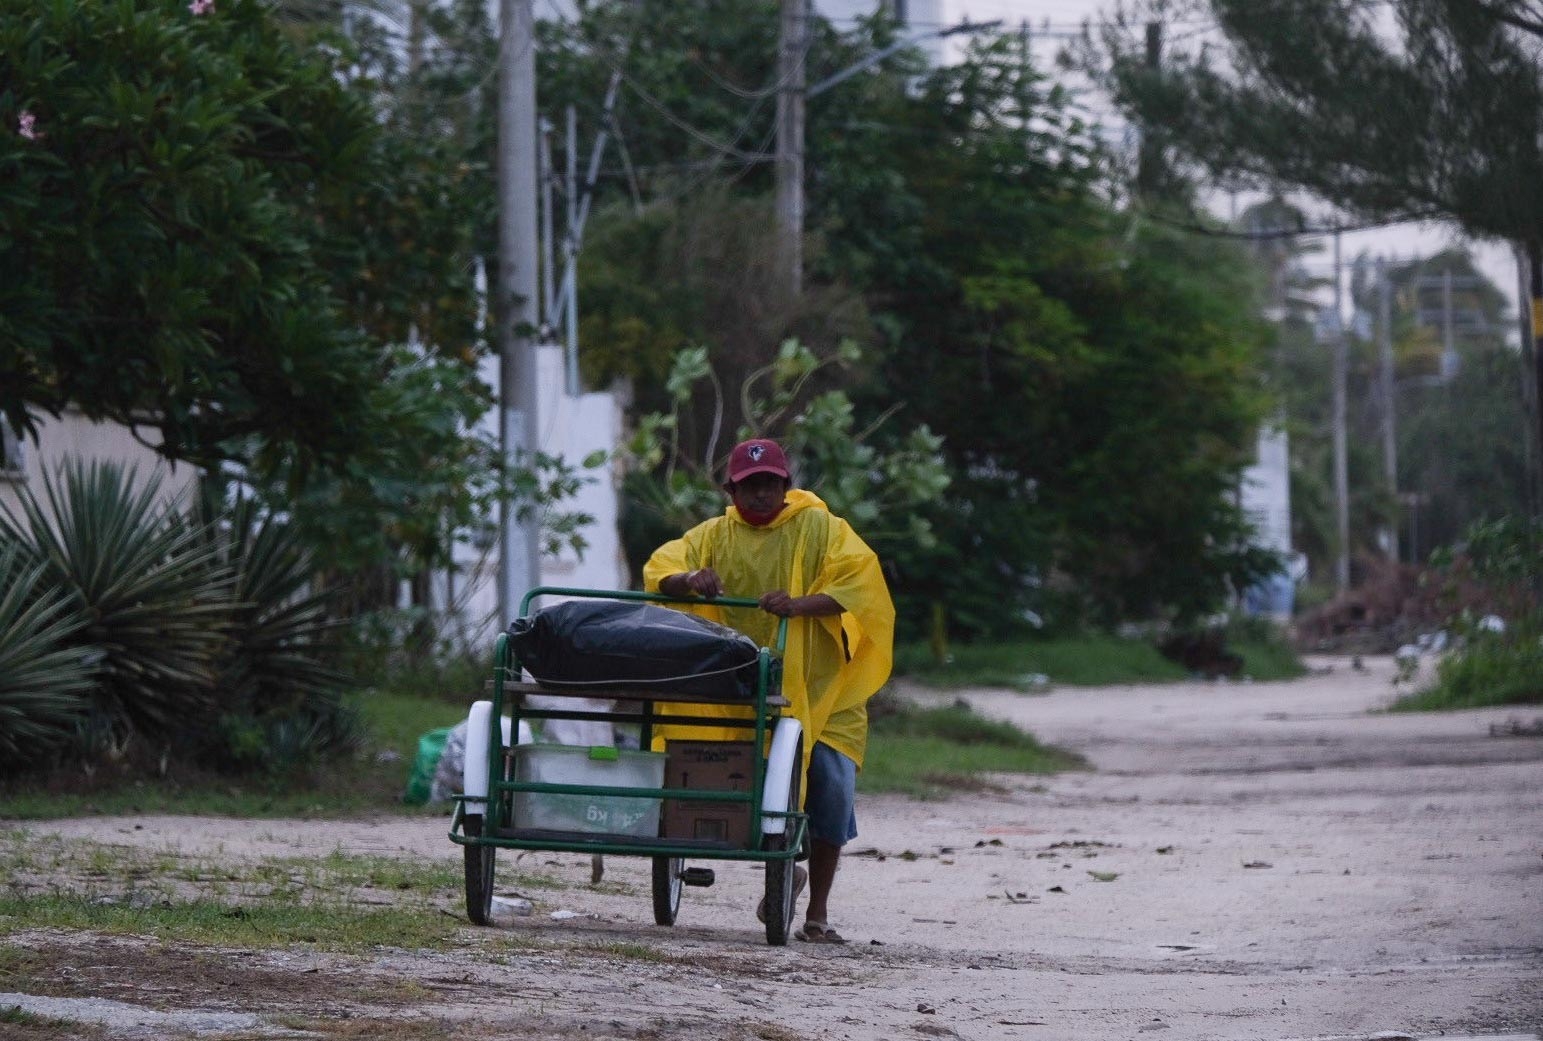 El Gobernador de Yucatán pidió evitar salidas innecesarias en los municipios. Foto: Por Esto!